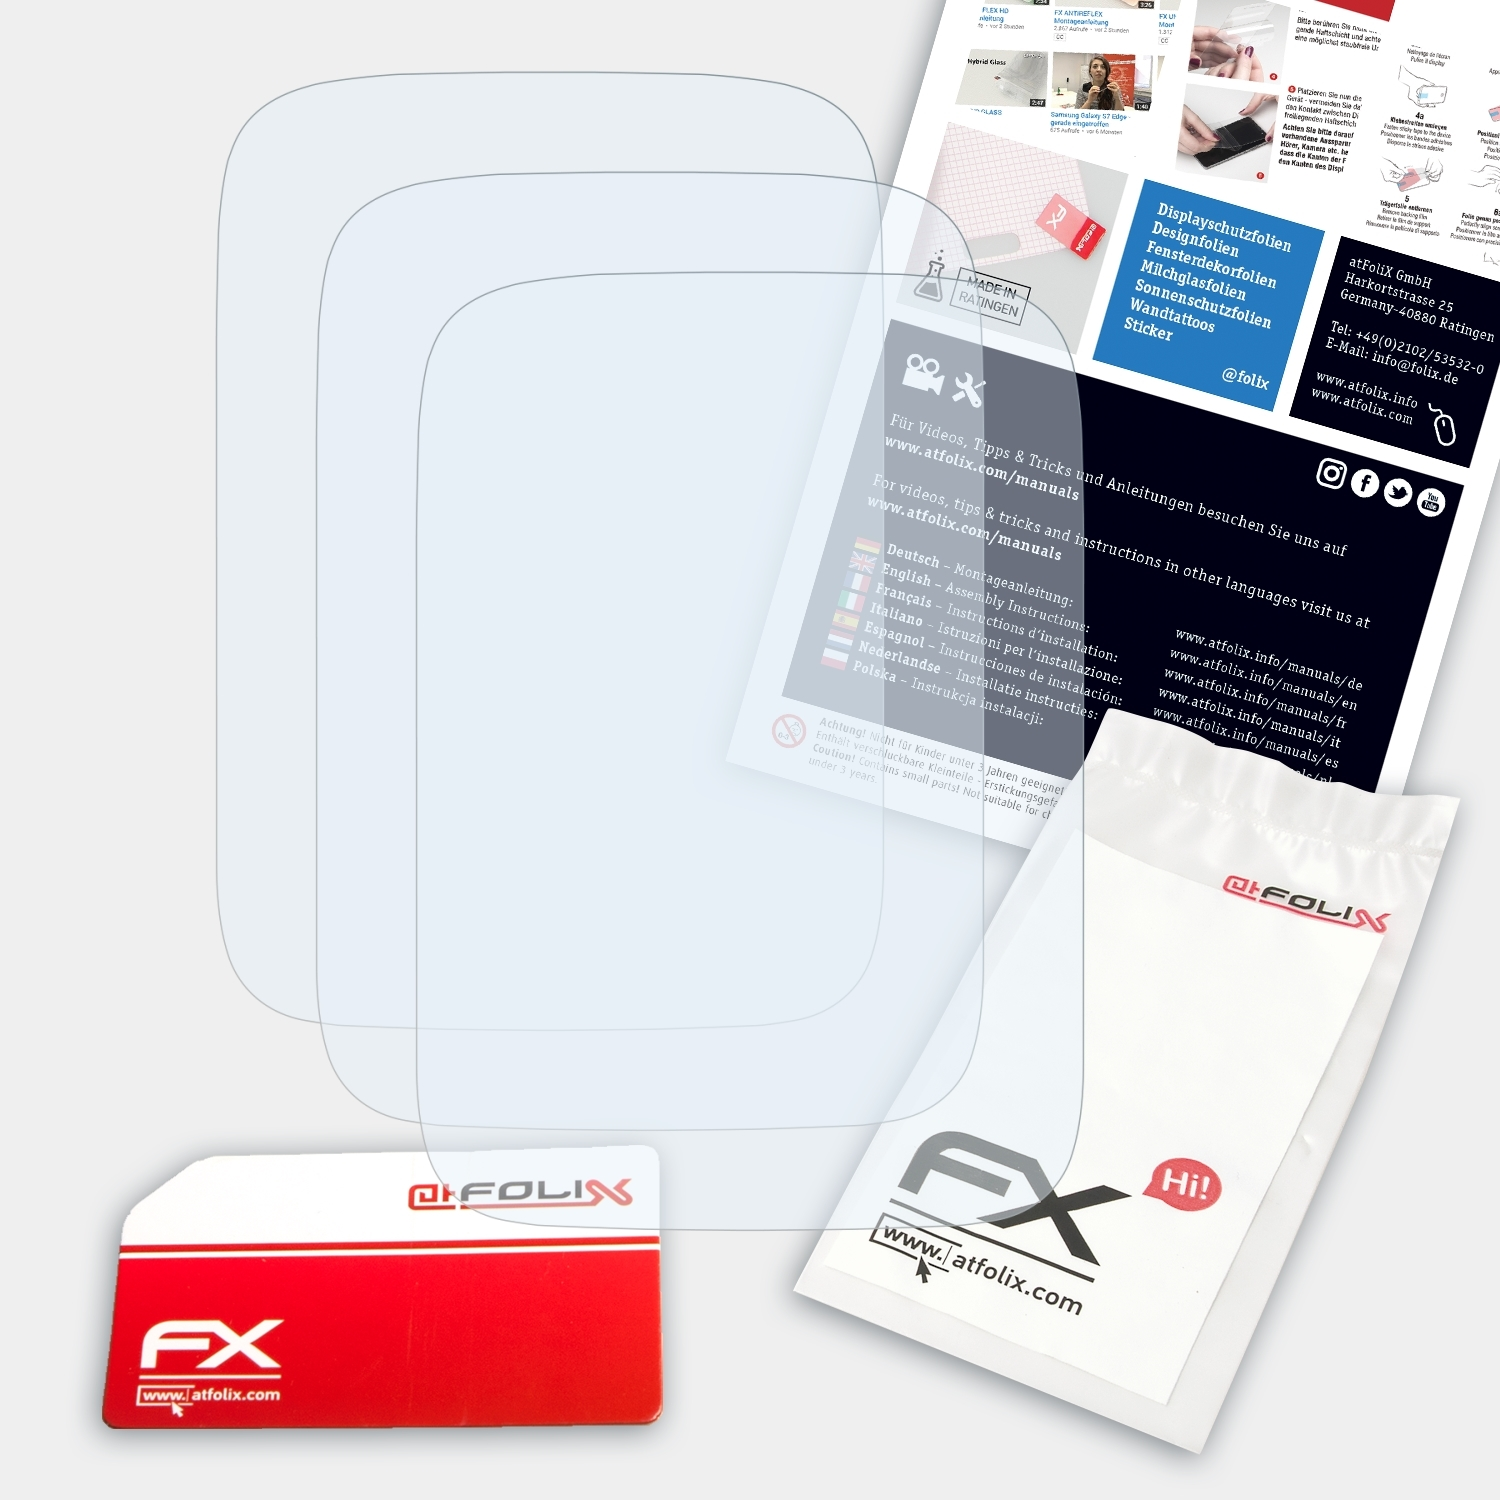 ATFOLIX 3x FX-Clear Displayschutz(für Polar M460)